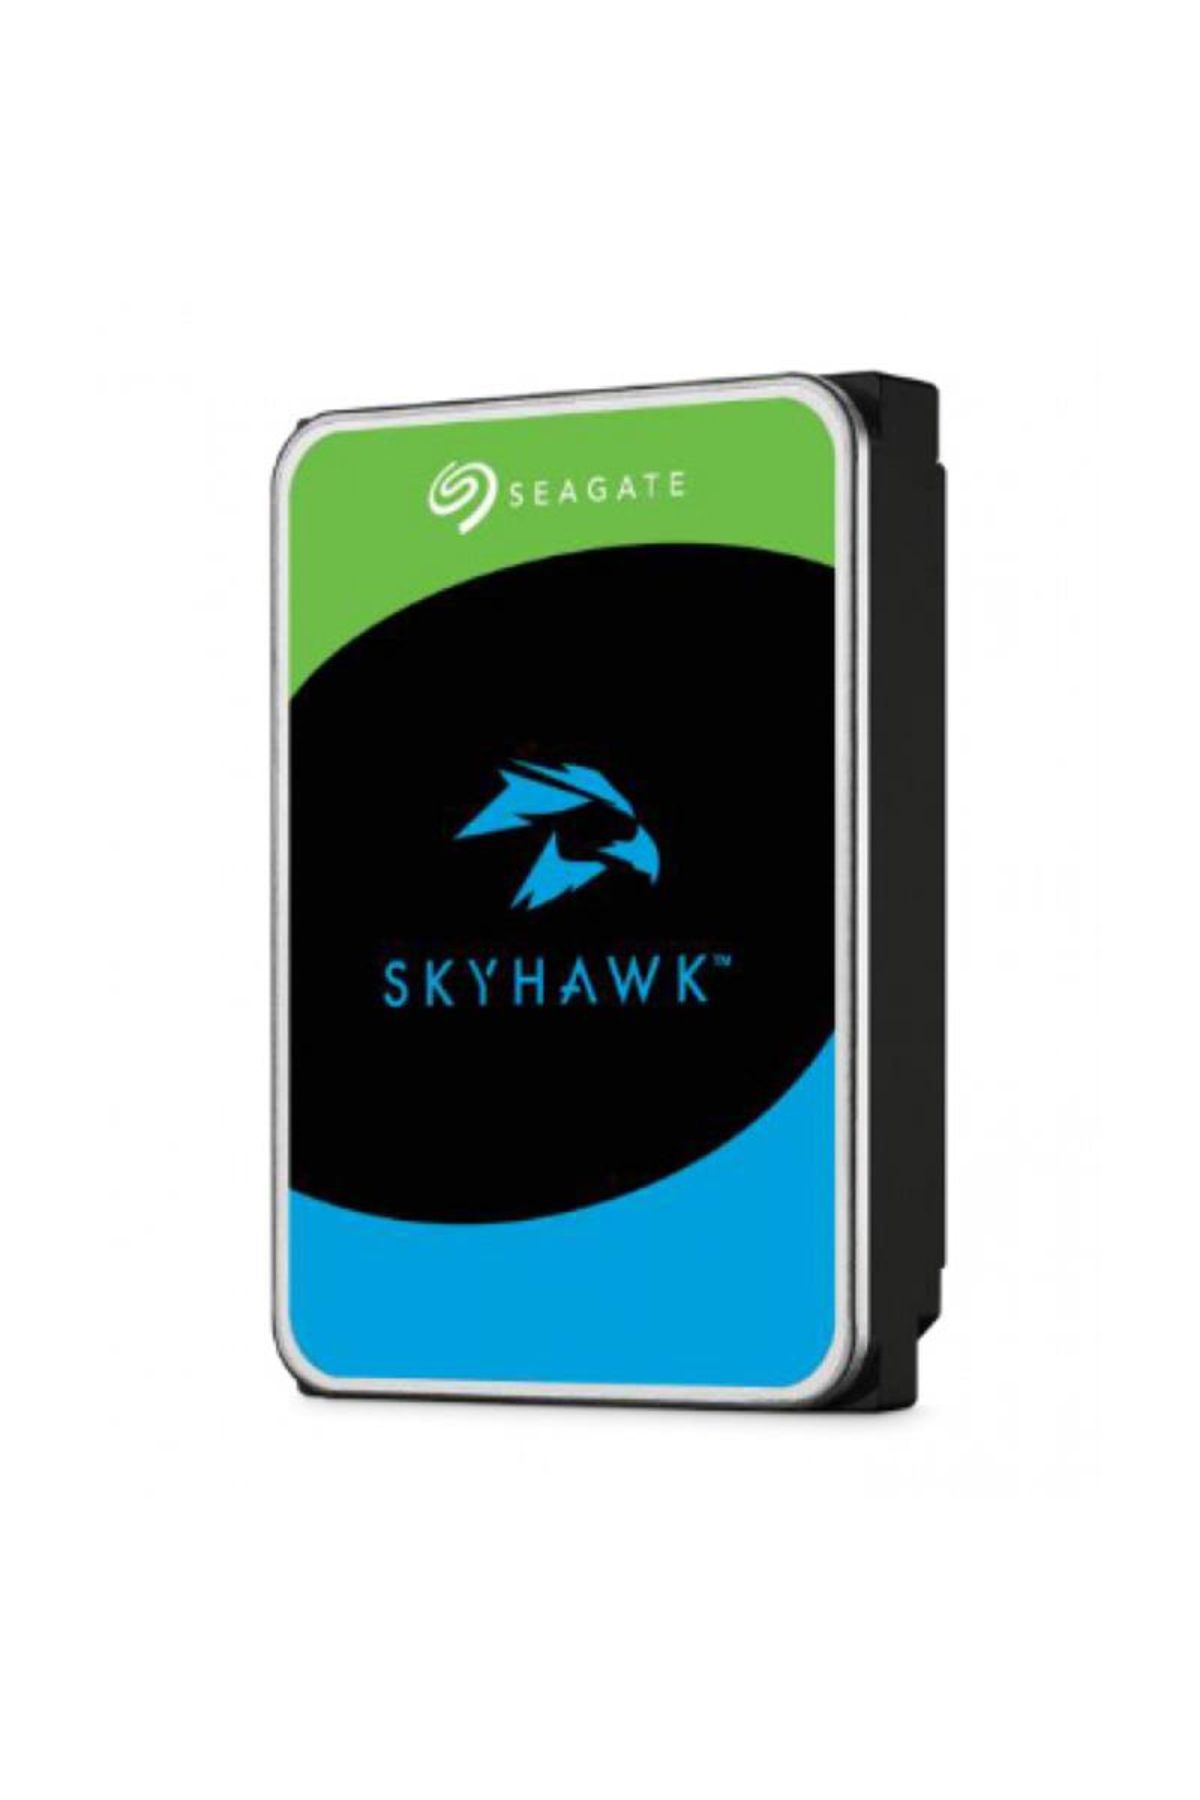 Seagate Skyhawk St2000vx017 3.5" 2tb 256mb 5900rpm 7/24 Güvenlik Diski